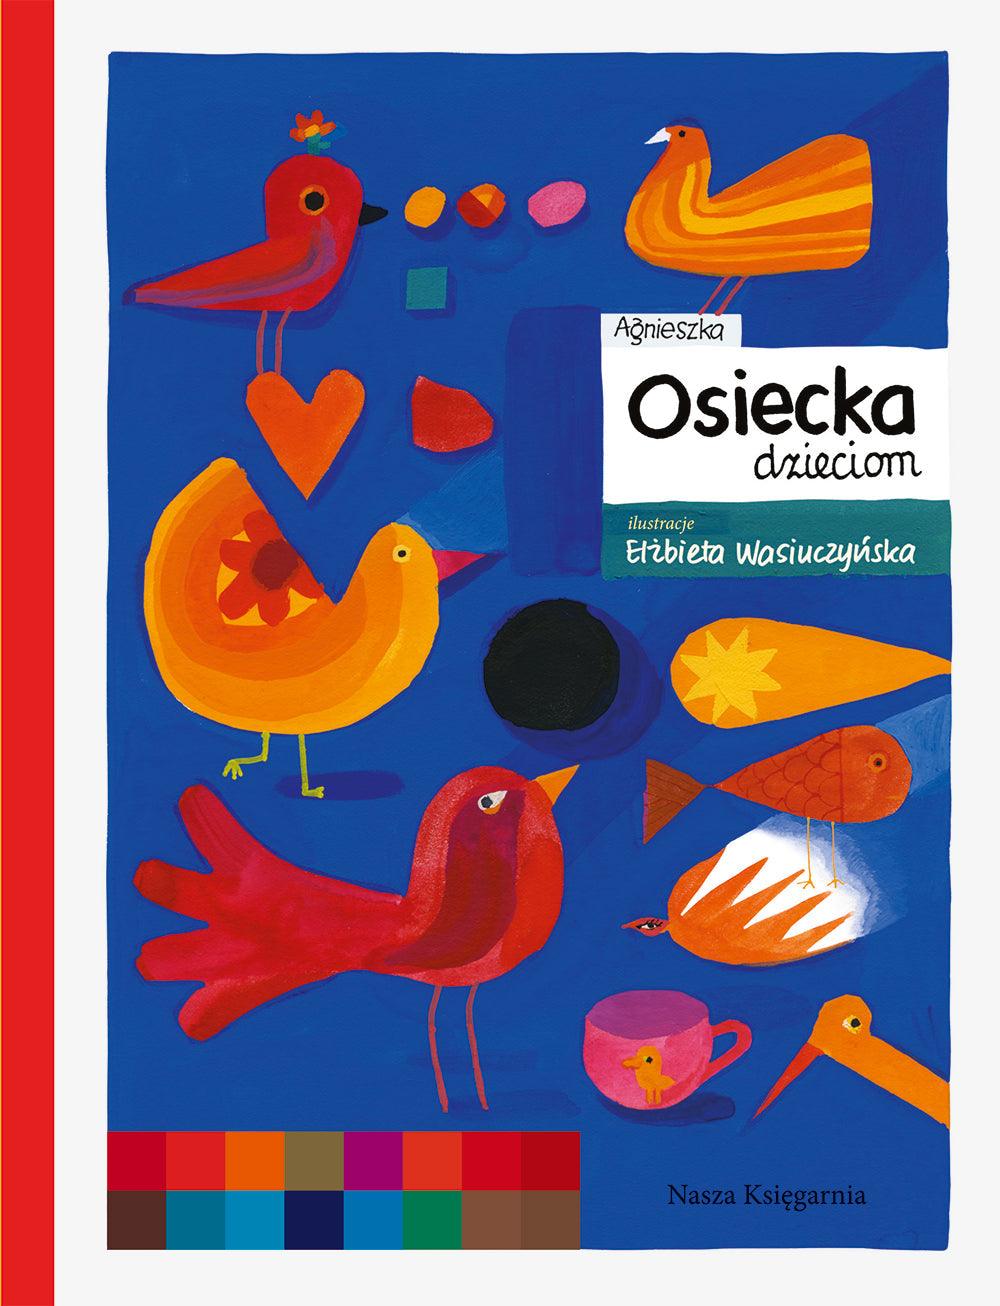 Nasza Księgarnia: Agnieszka Osiecka dzieciom - Noski Noski